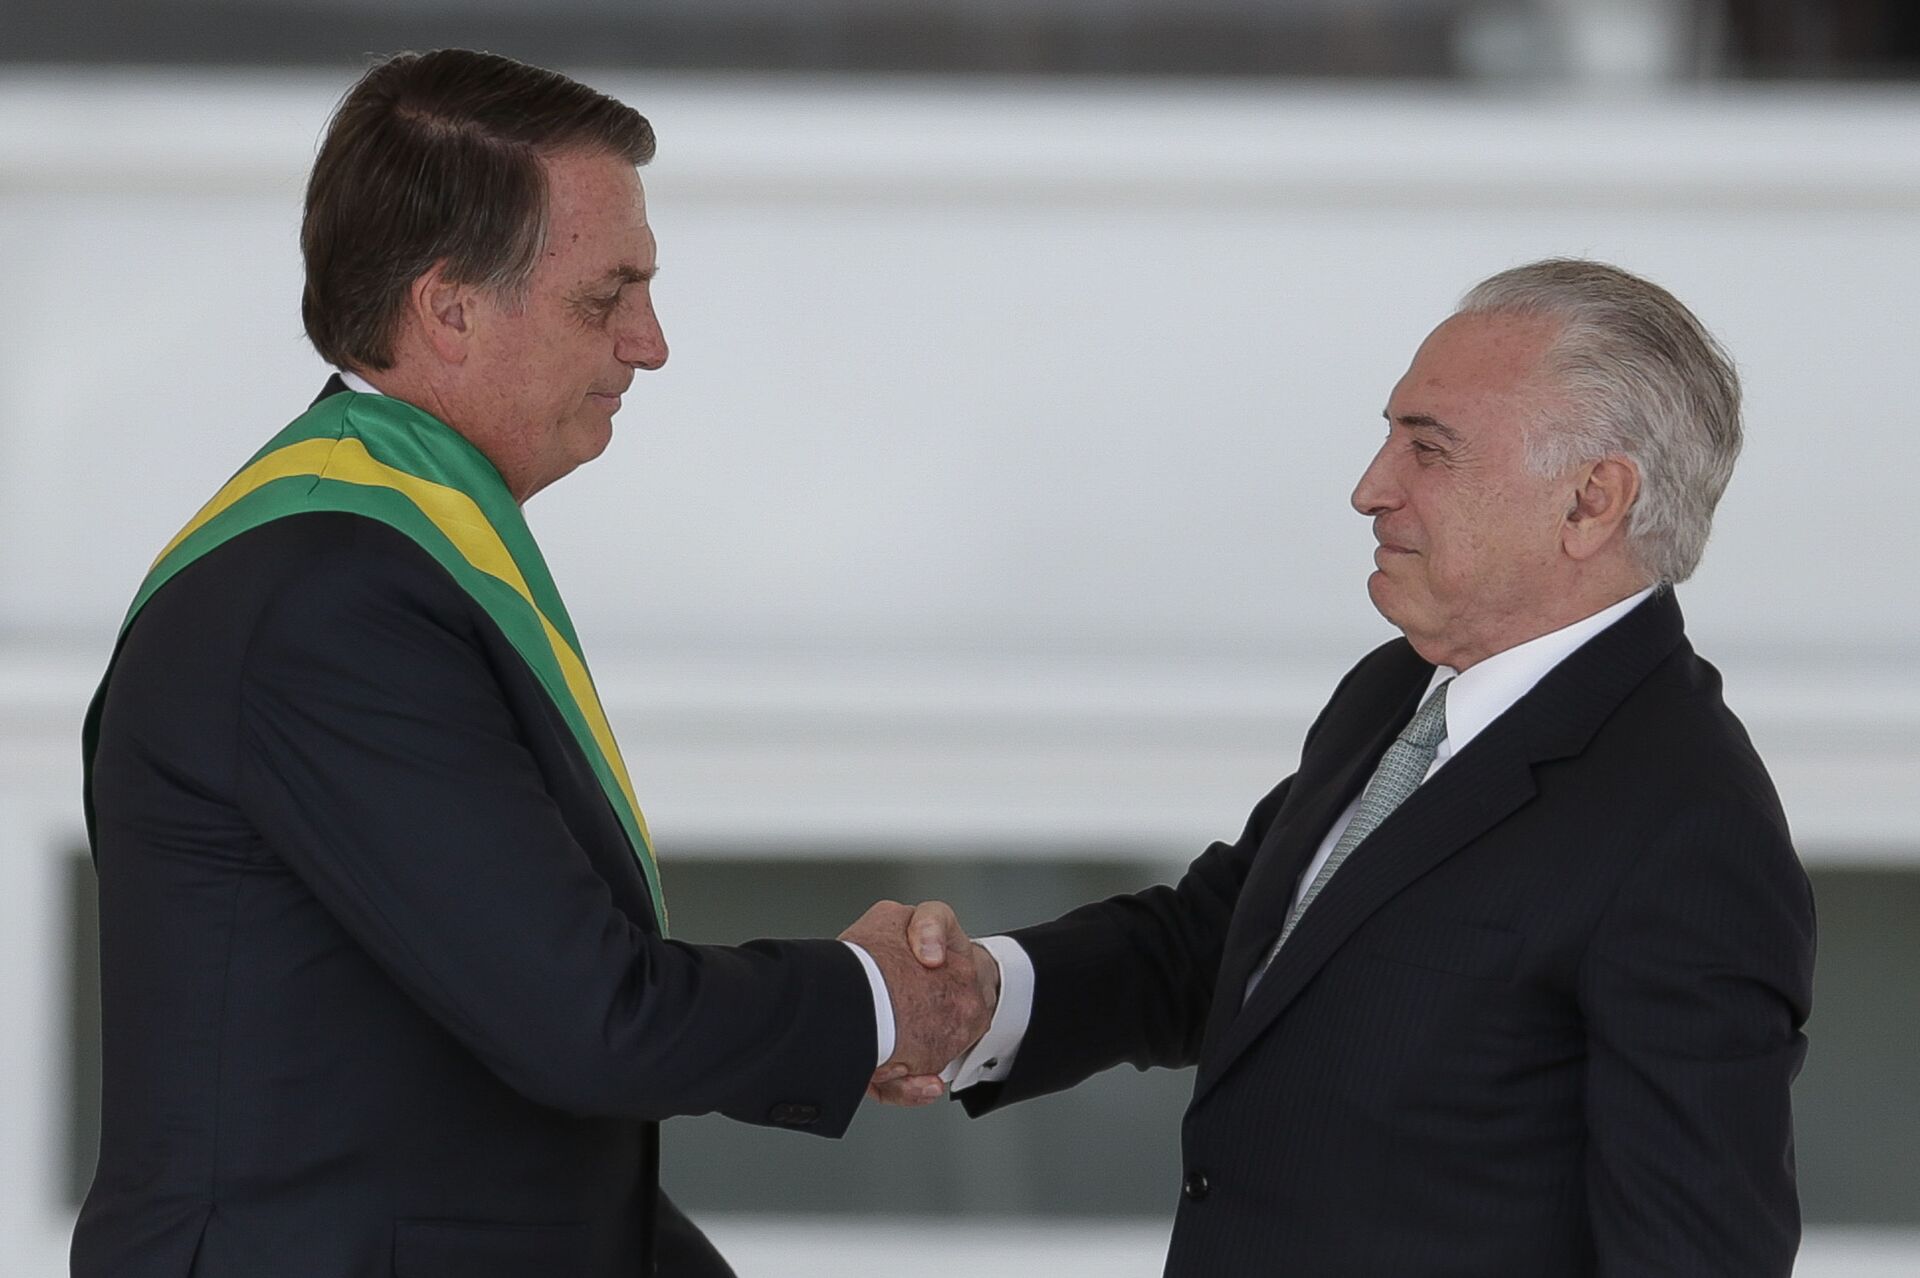 Em Brasília, o presidente Jair Bolsonaro recebe a faixa presidencial das mãos do ex-presidente Michel Temer, no Palácio do Planalto (foto de arquivo) - Sputnik Brasil, 1920, 09.11.2021